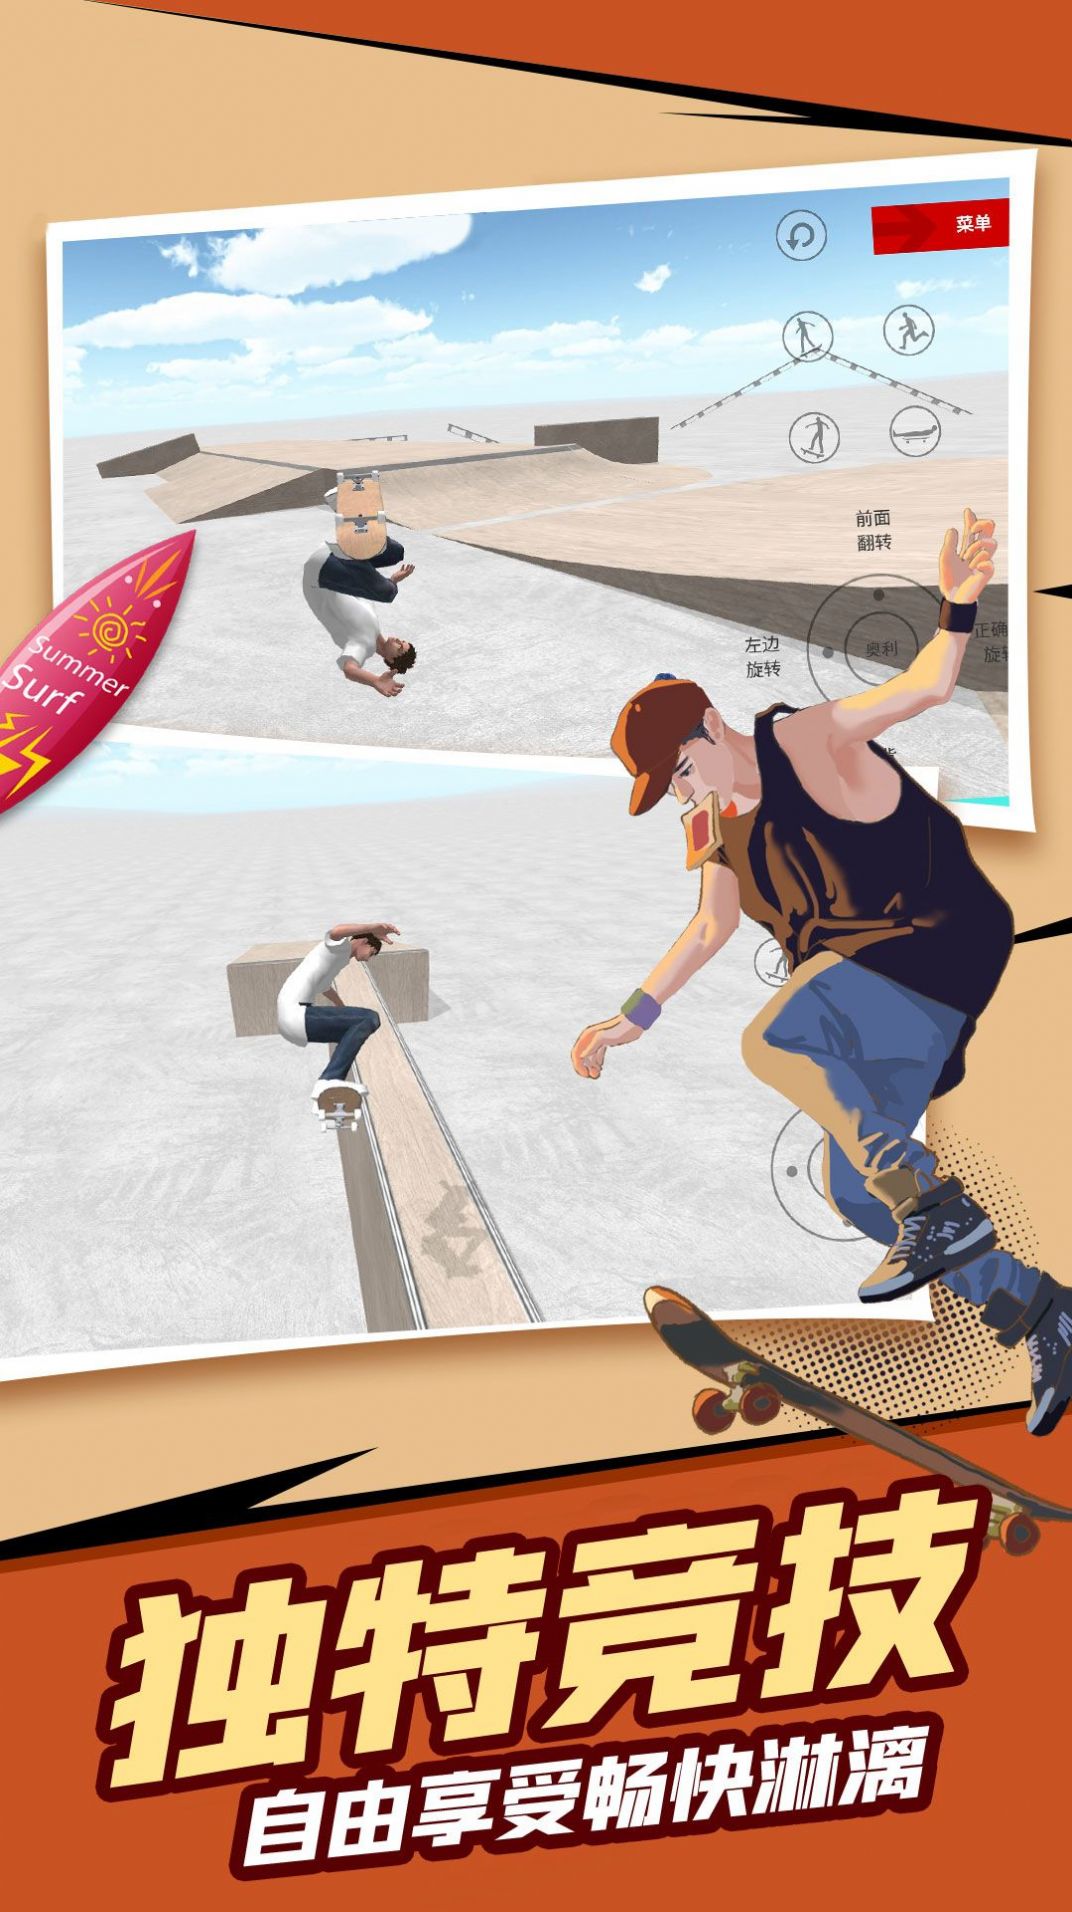 自由滑板模拟游戏官方版截图2: